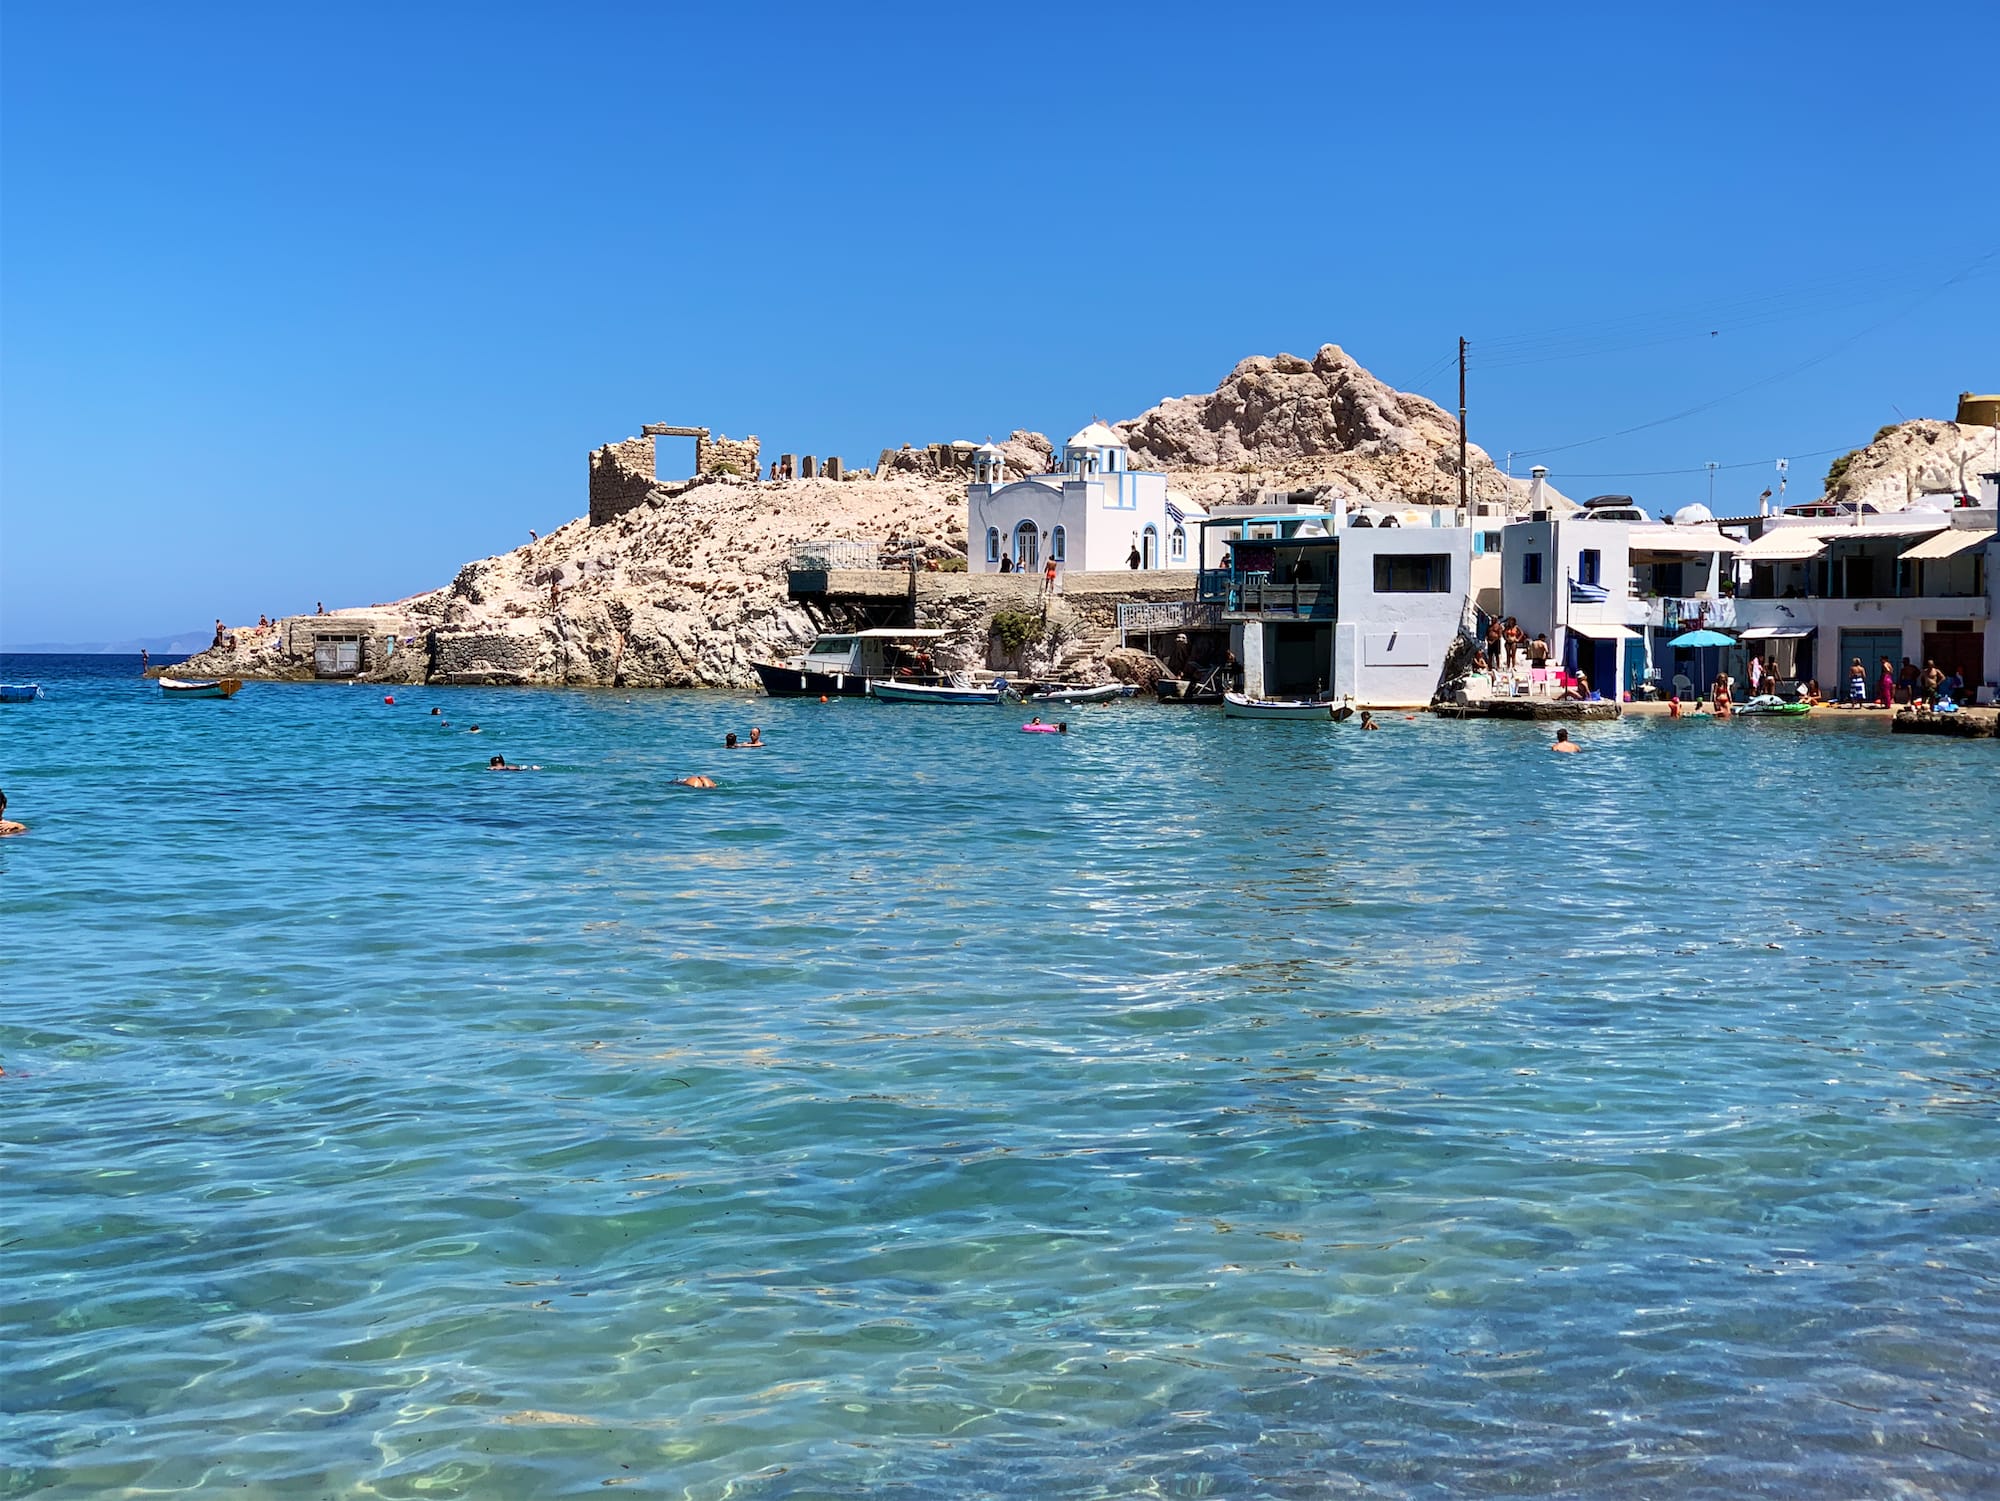 Milos, un'isola di infinita bellezza